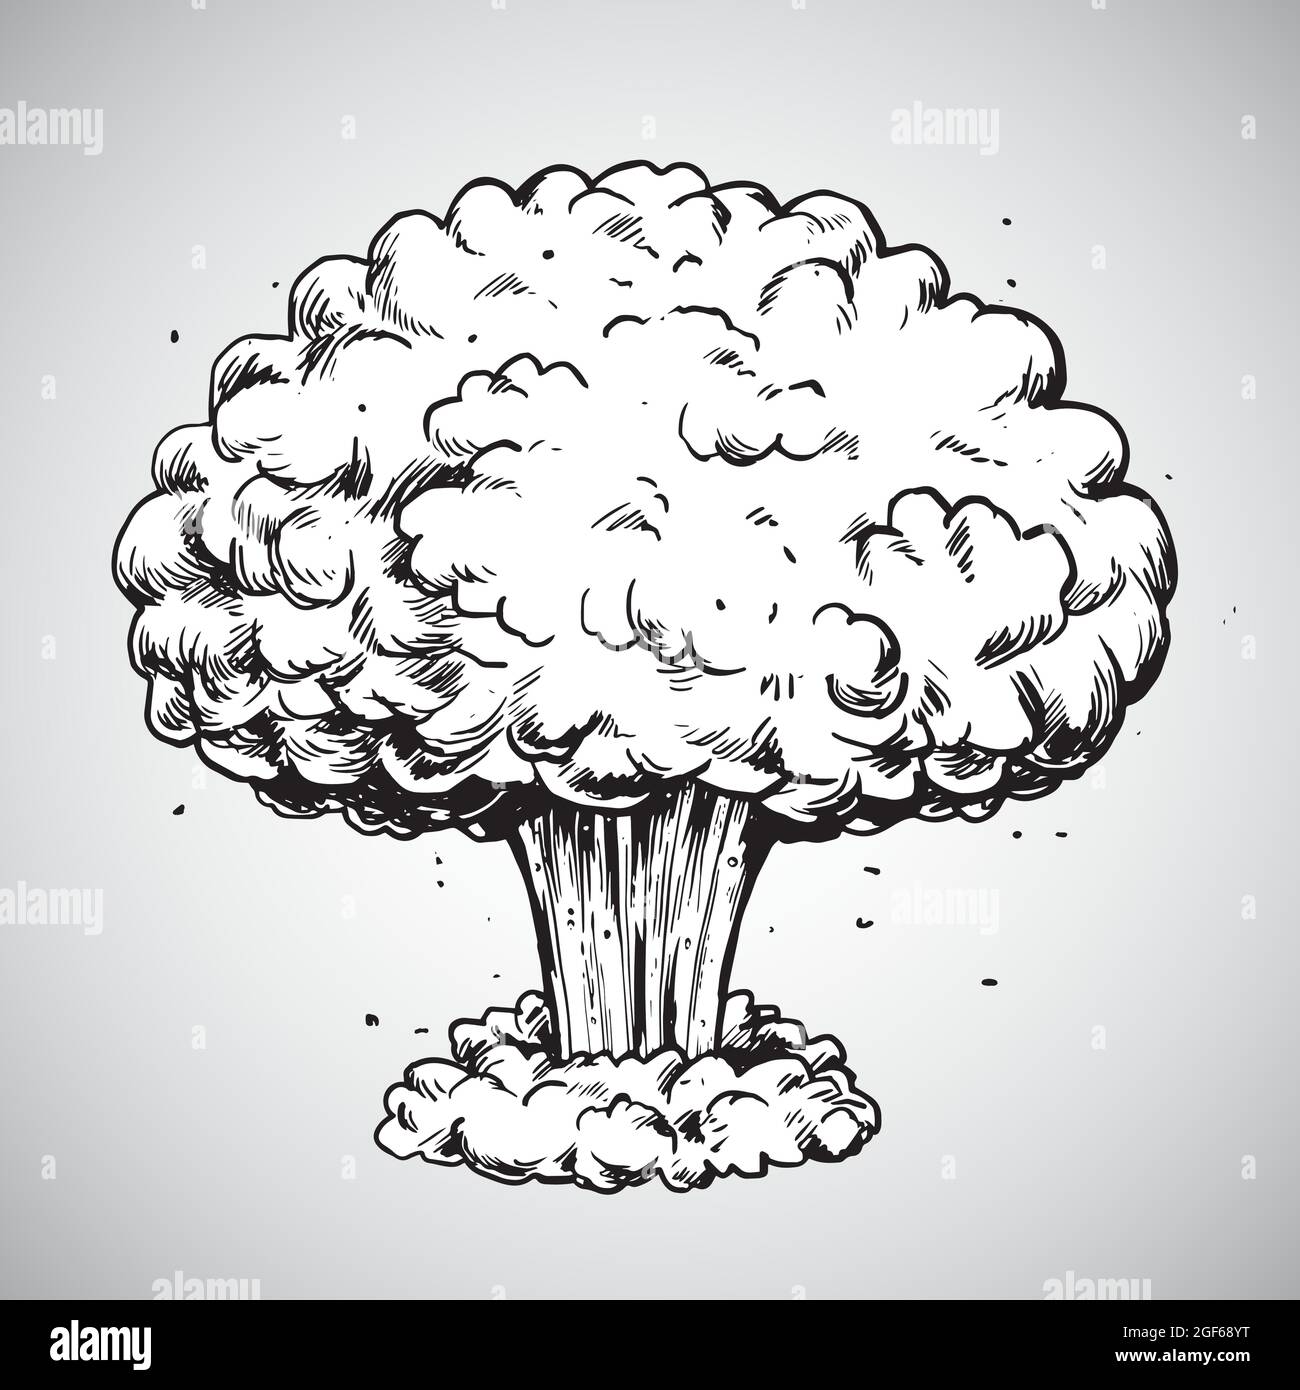 Explosion nucléaire nuage de champignons dessin Illustration vecteur Illustration de Vecteur